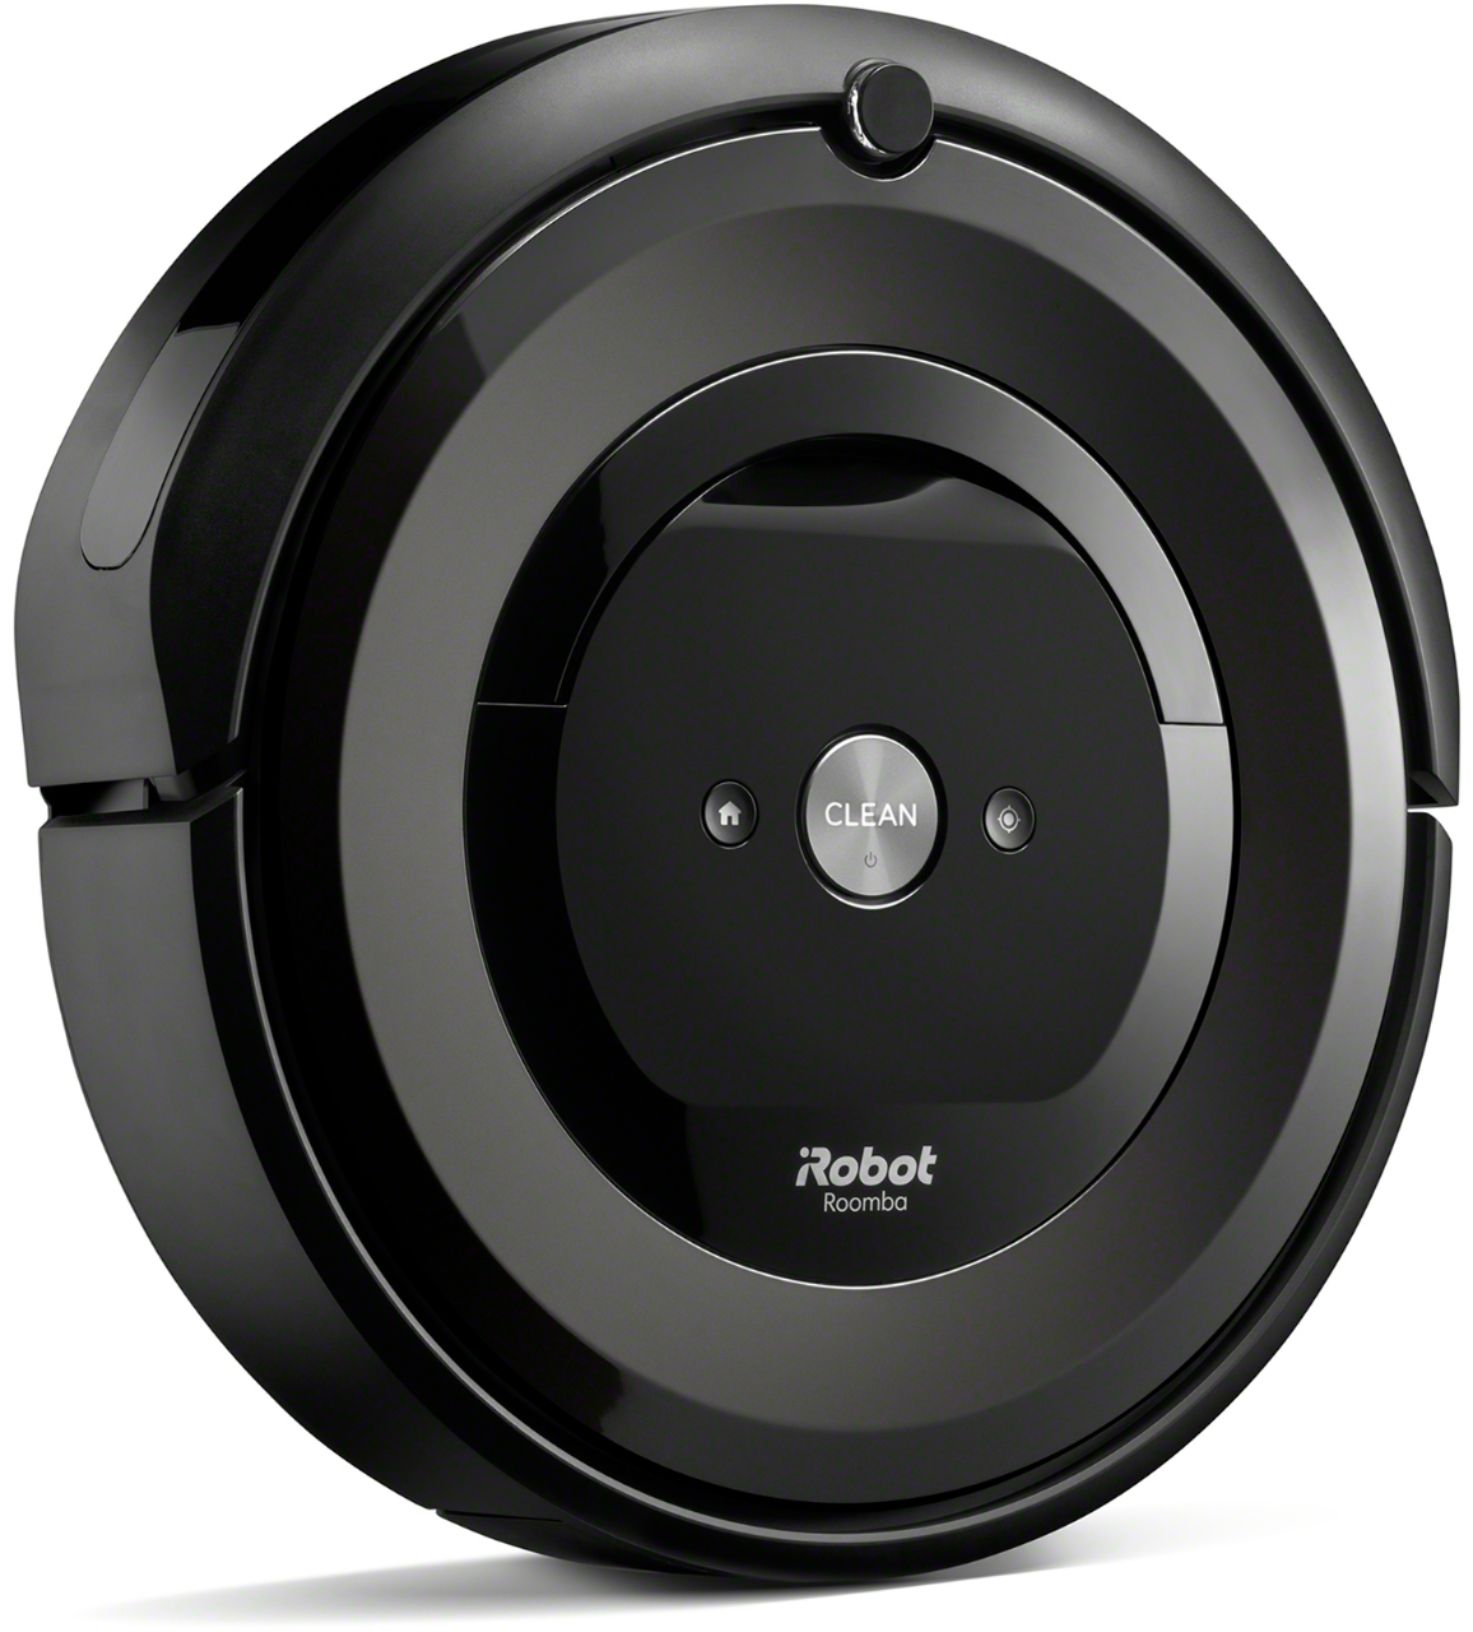 iRobot Roomba e5  Acheter sur Ricardo